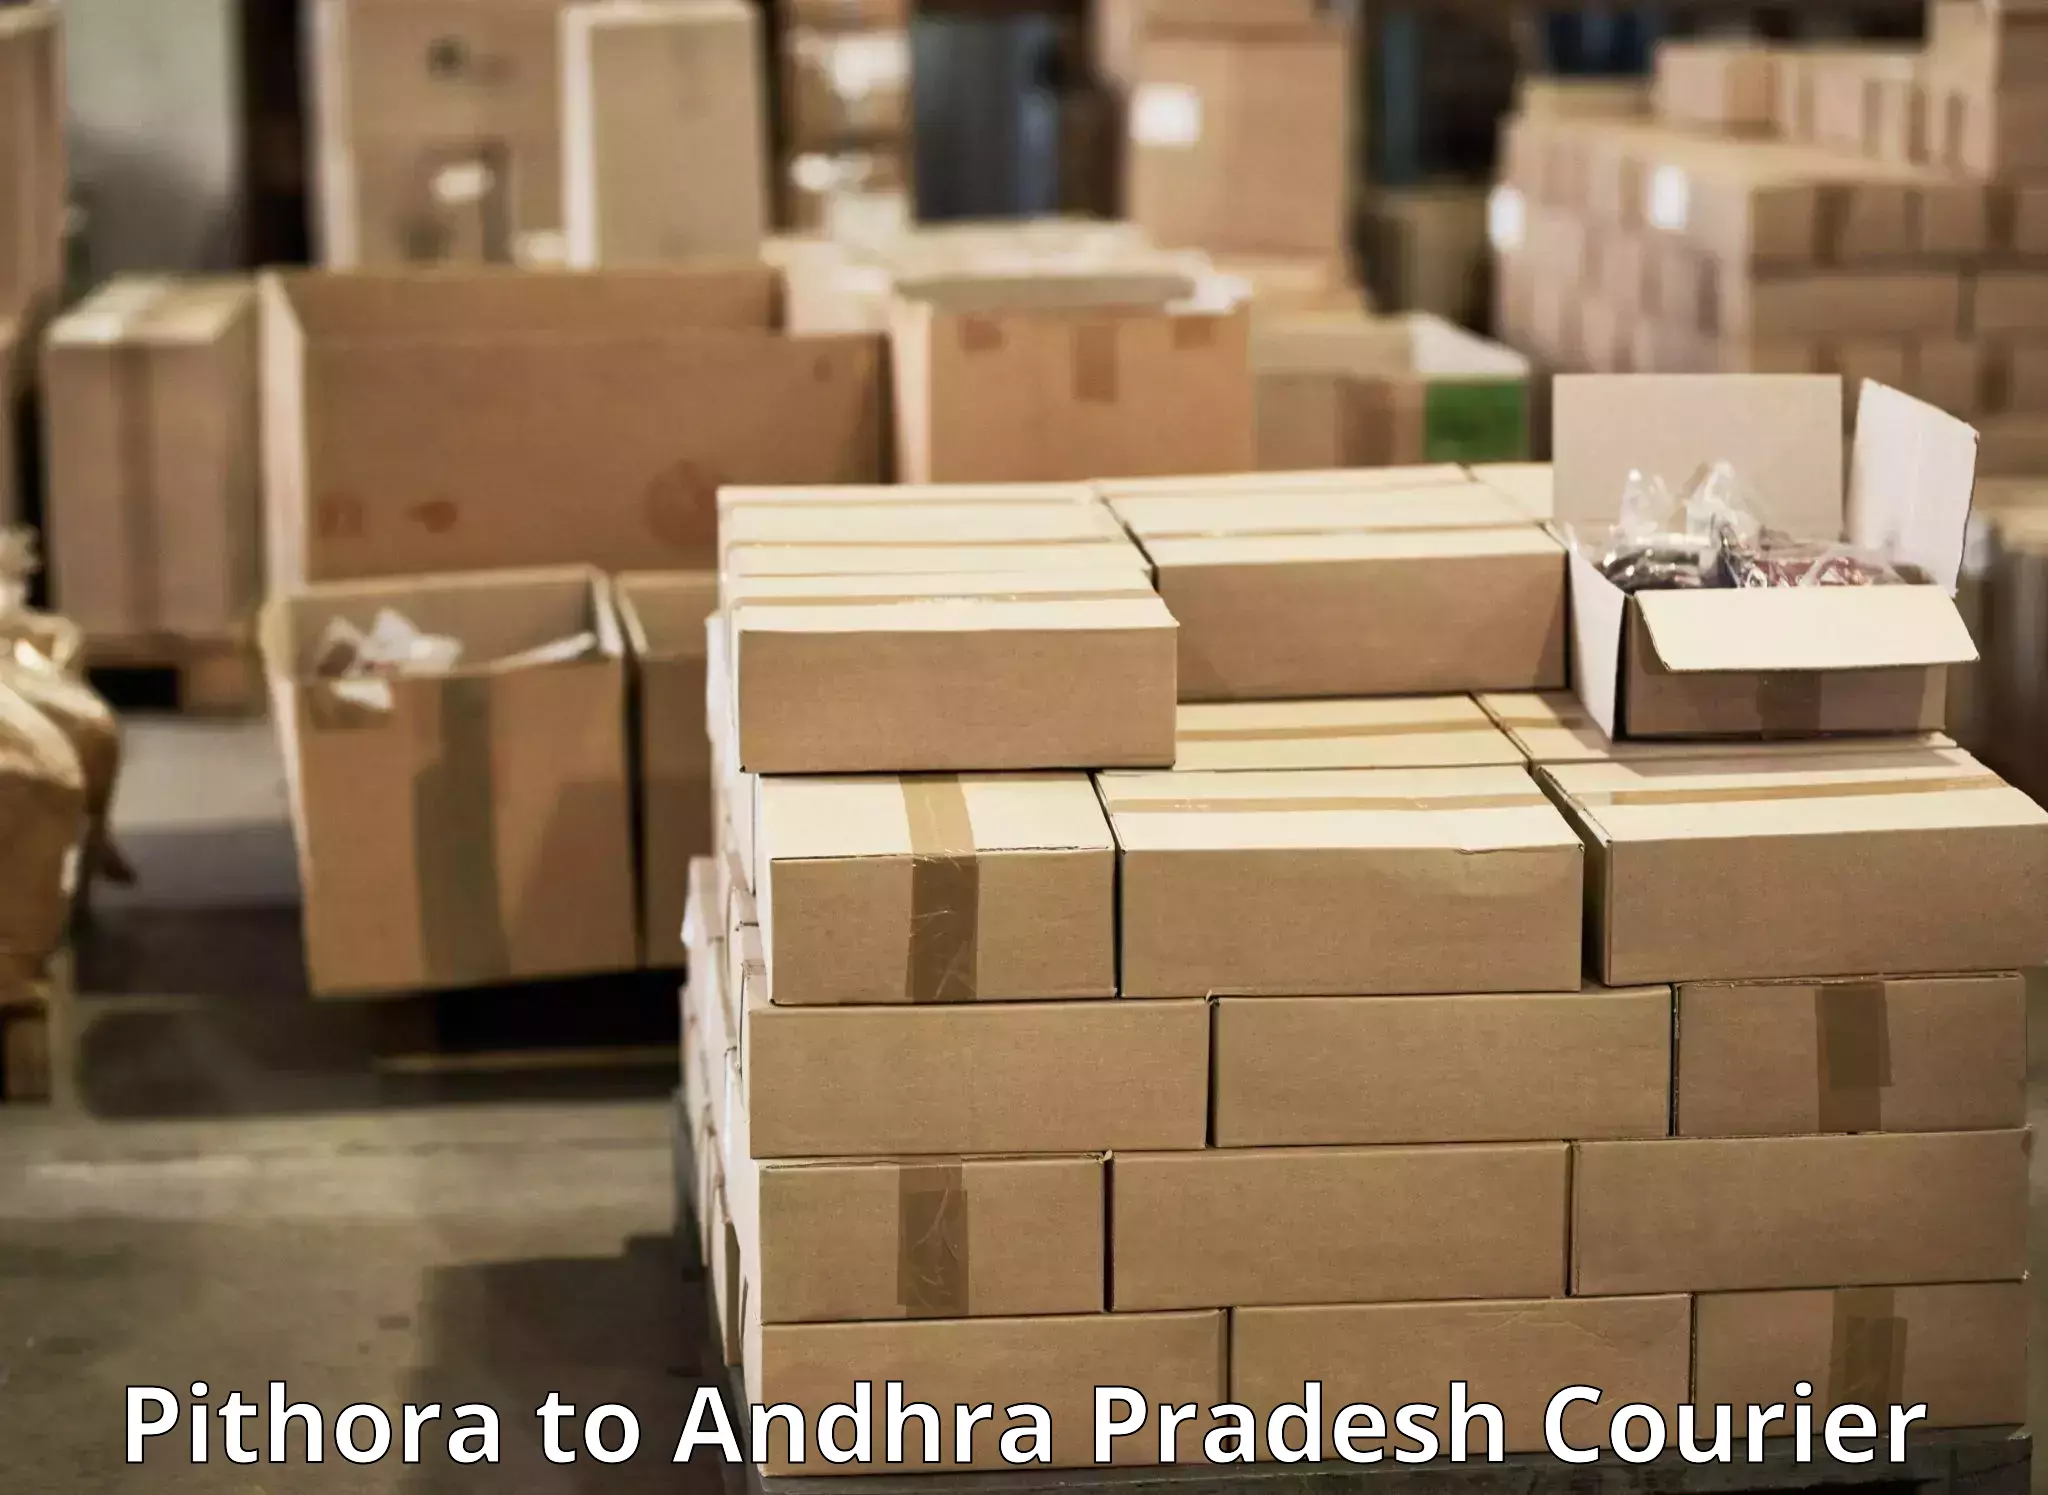 Multi-national courier services Pithora to B Kothakota